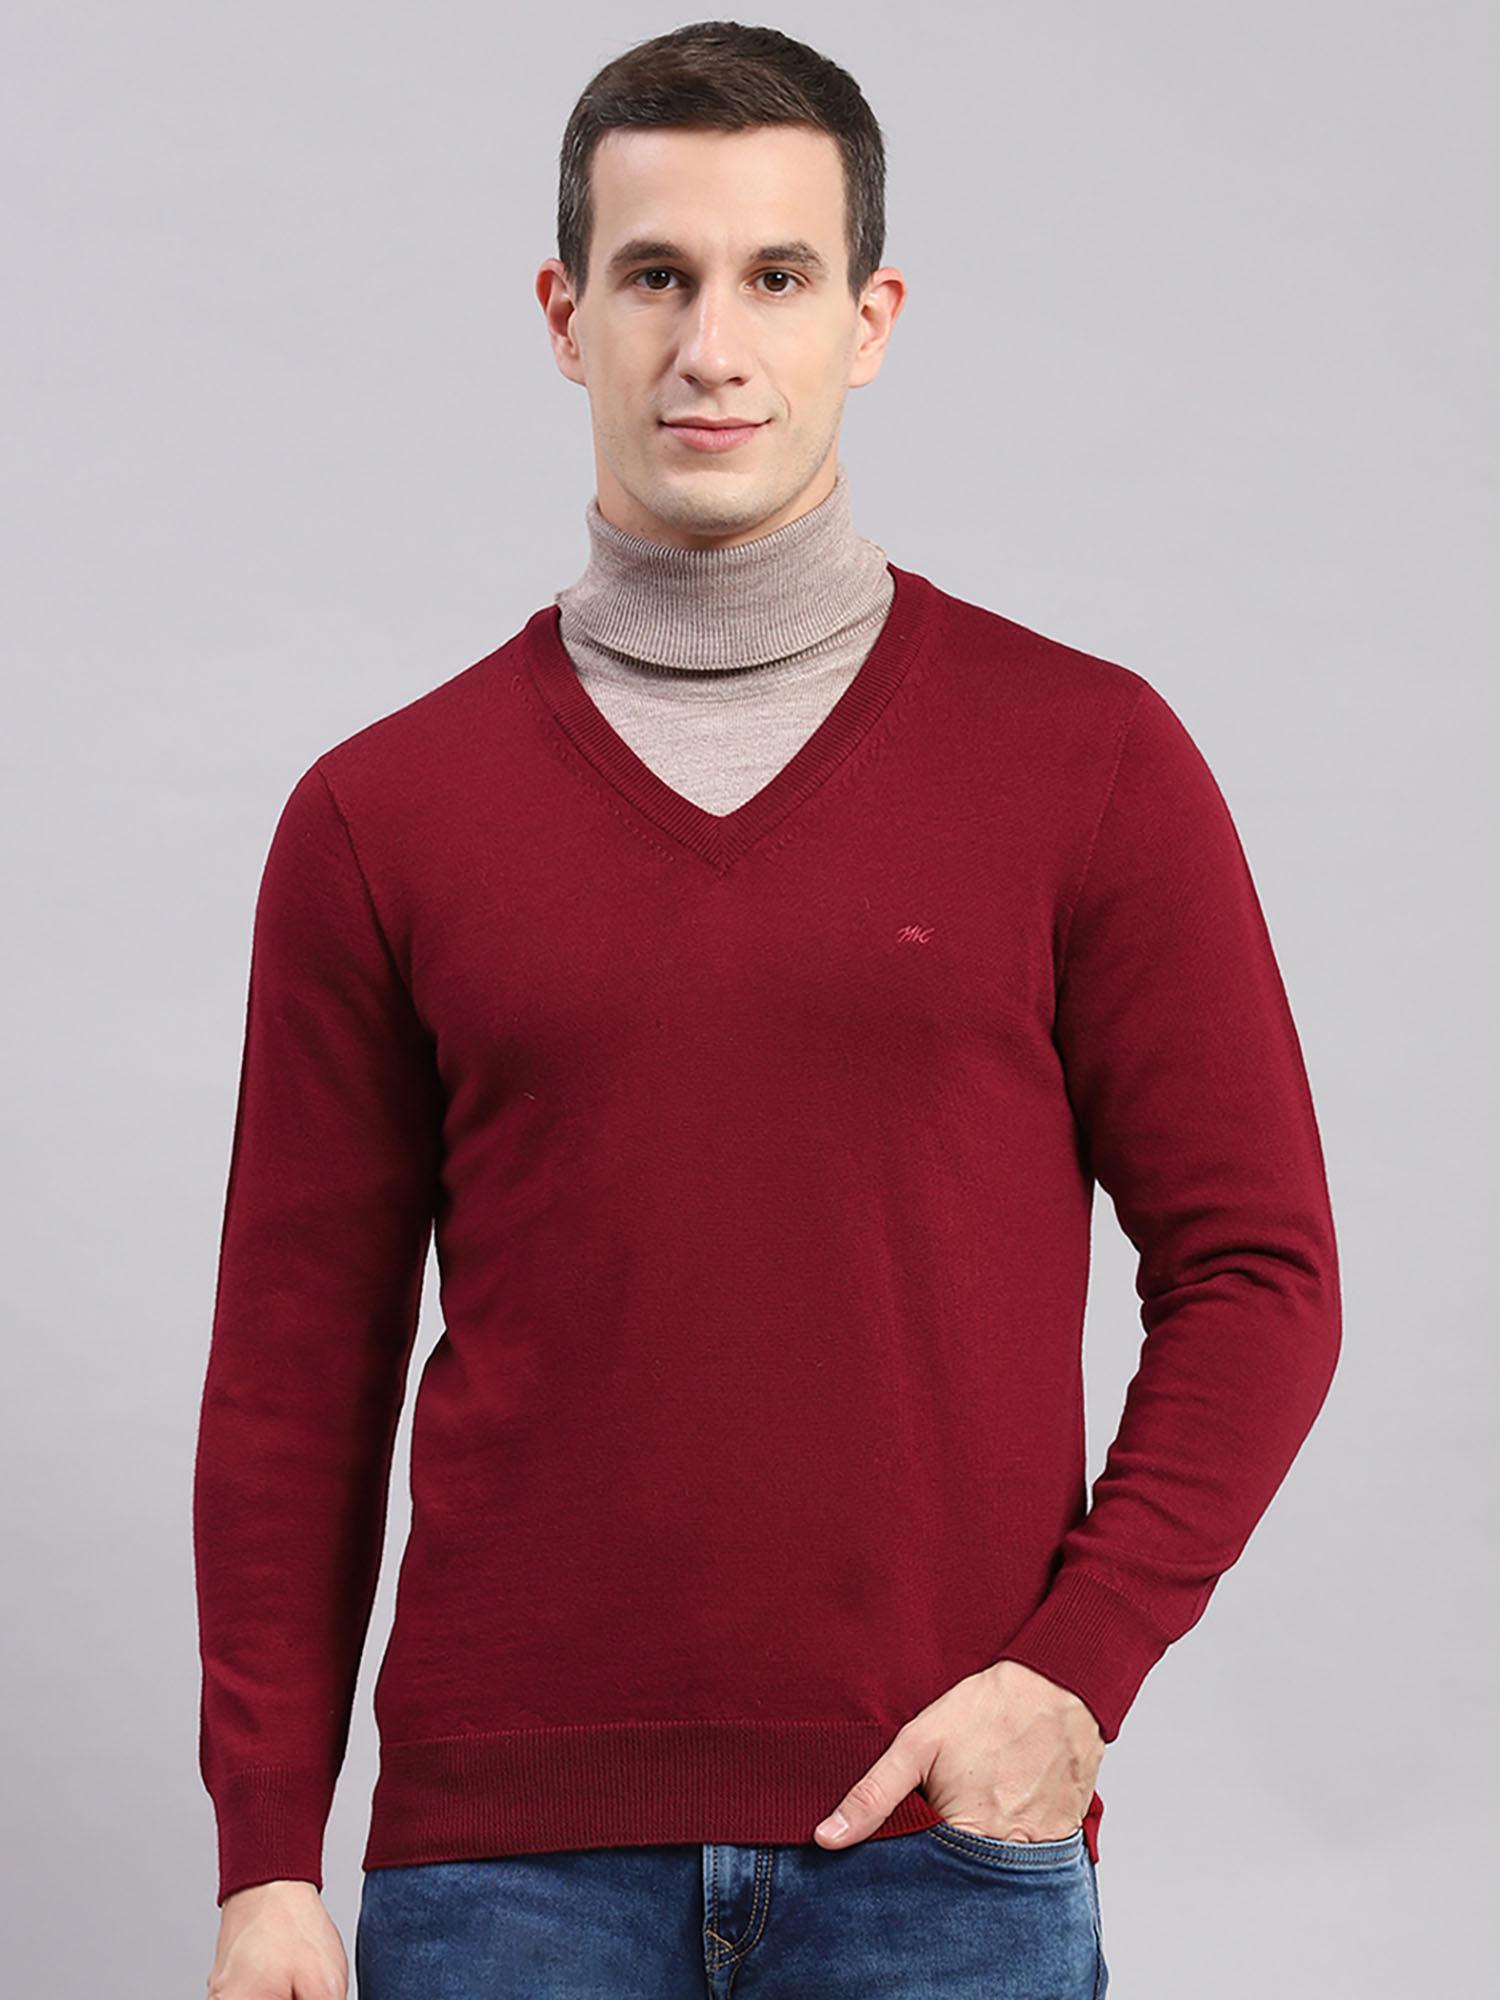 medium-maroon-solid-v-neck-sweater